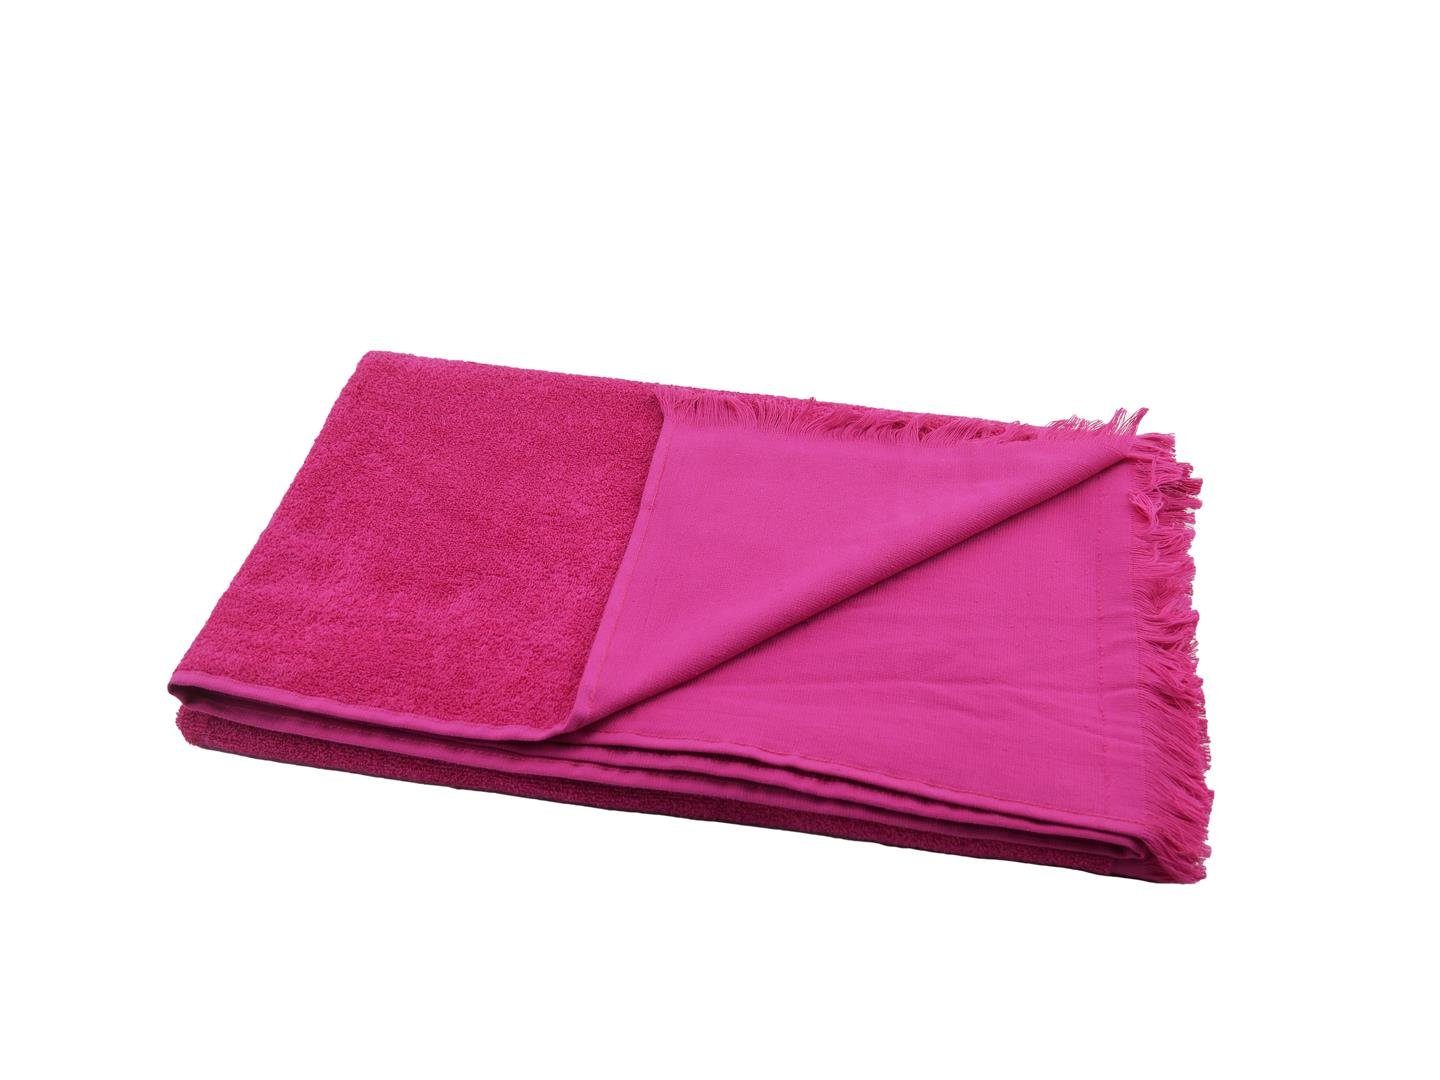 90x180 cm, Sensepura saugstarkes Saunatuch (1-St), Handtuch Badetuch Sauna Hamamtuch gerade Baumwolle pink, Frottee Fransen